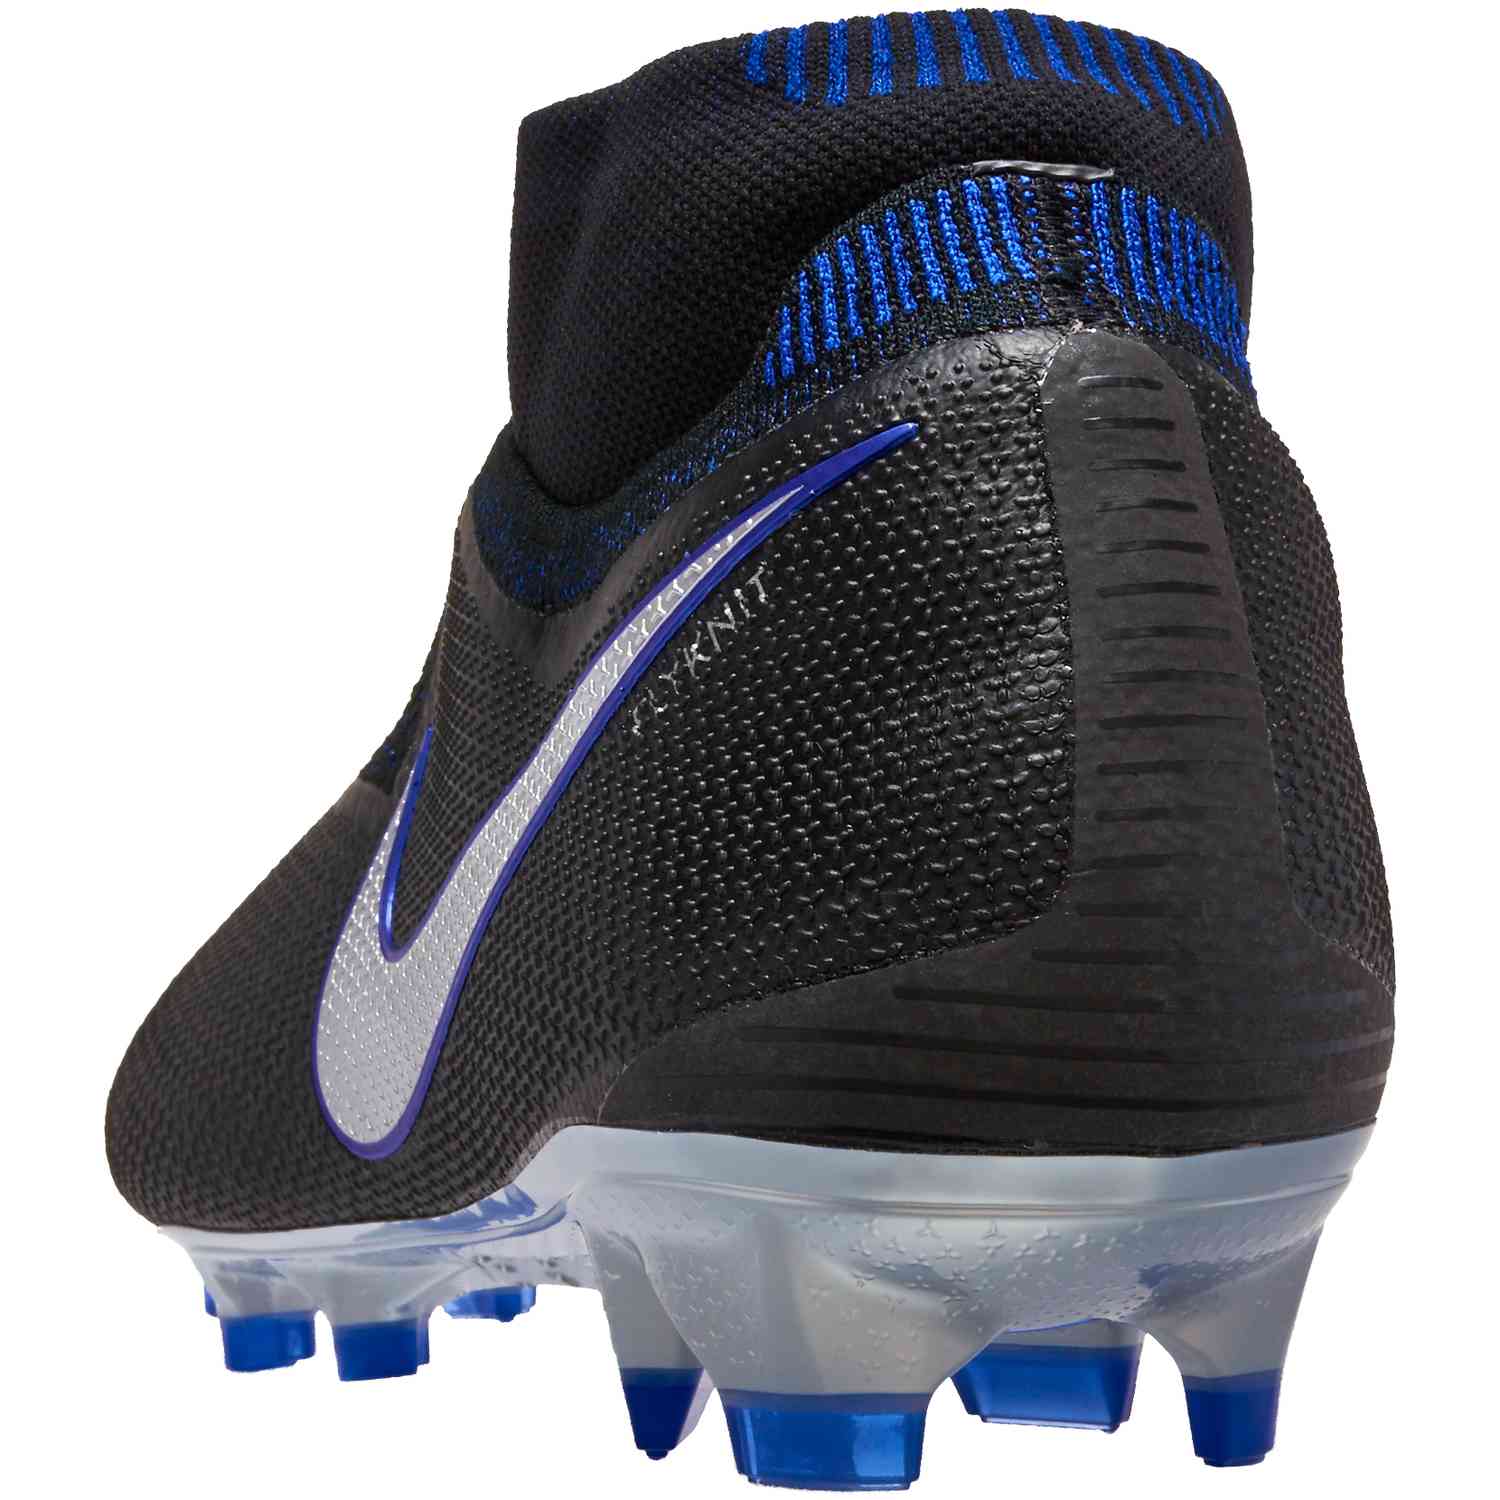 Nike Pitch Soccer Ball - Racer Blue - Soccer Master